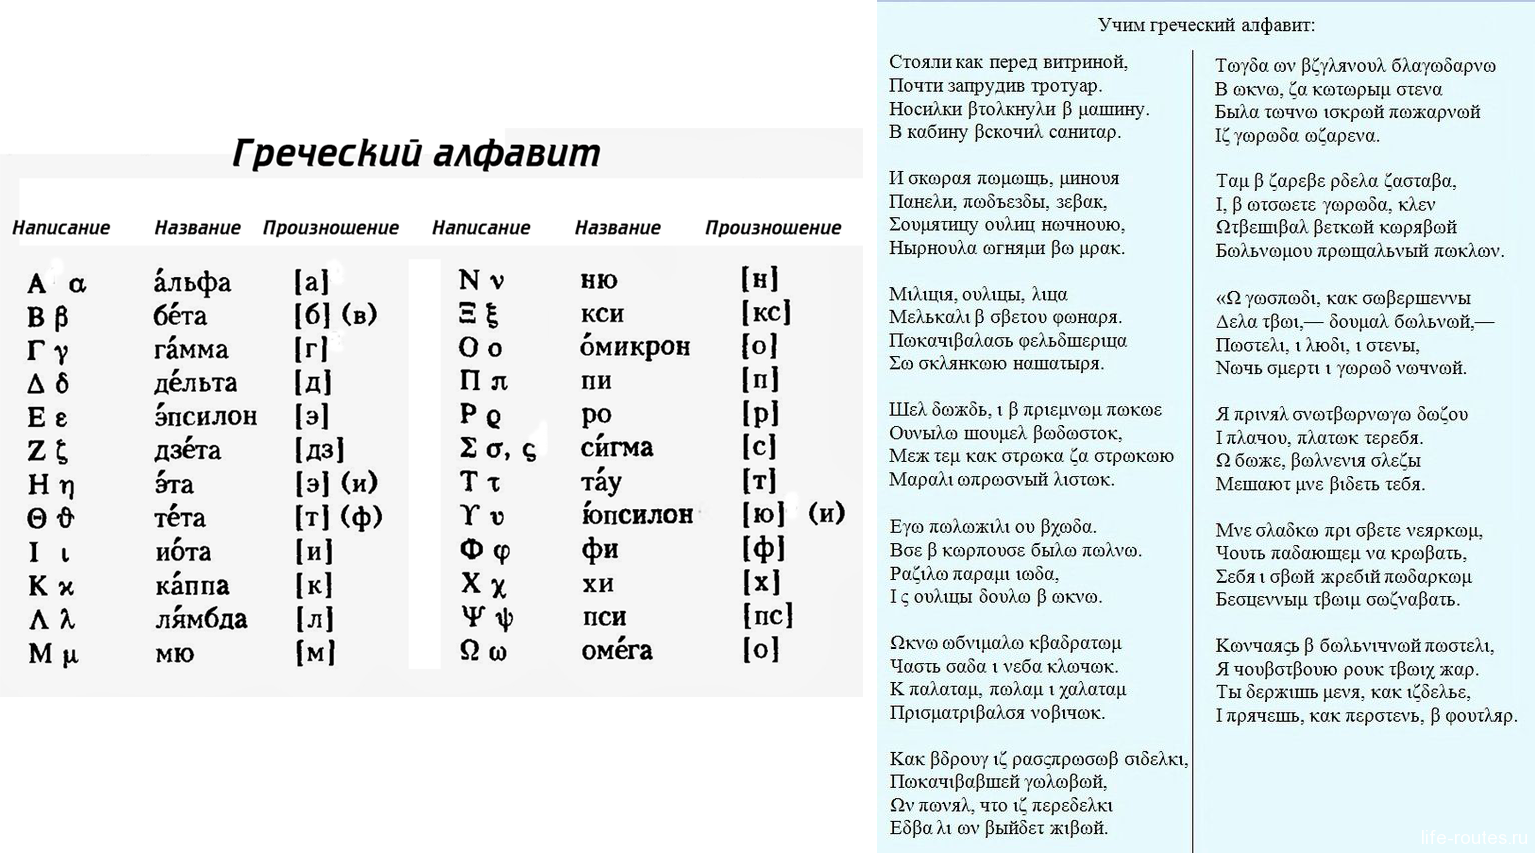 Найти греческие слова. Греческий алфавит с транскрипцией. Греческий язык учить с нуля. Произношение букв греческого алфавита. Произношение греческих слов.